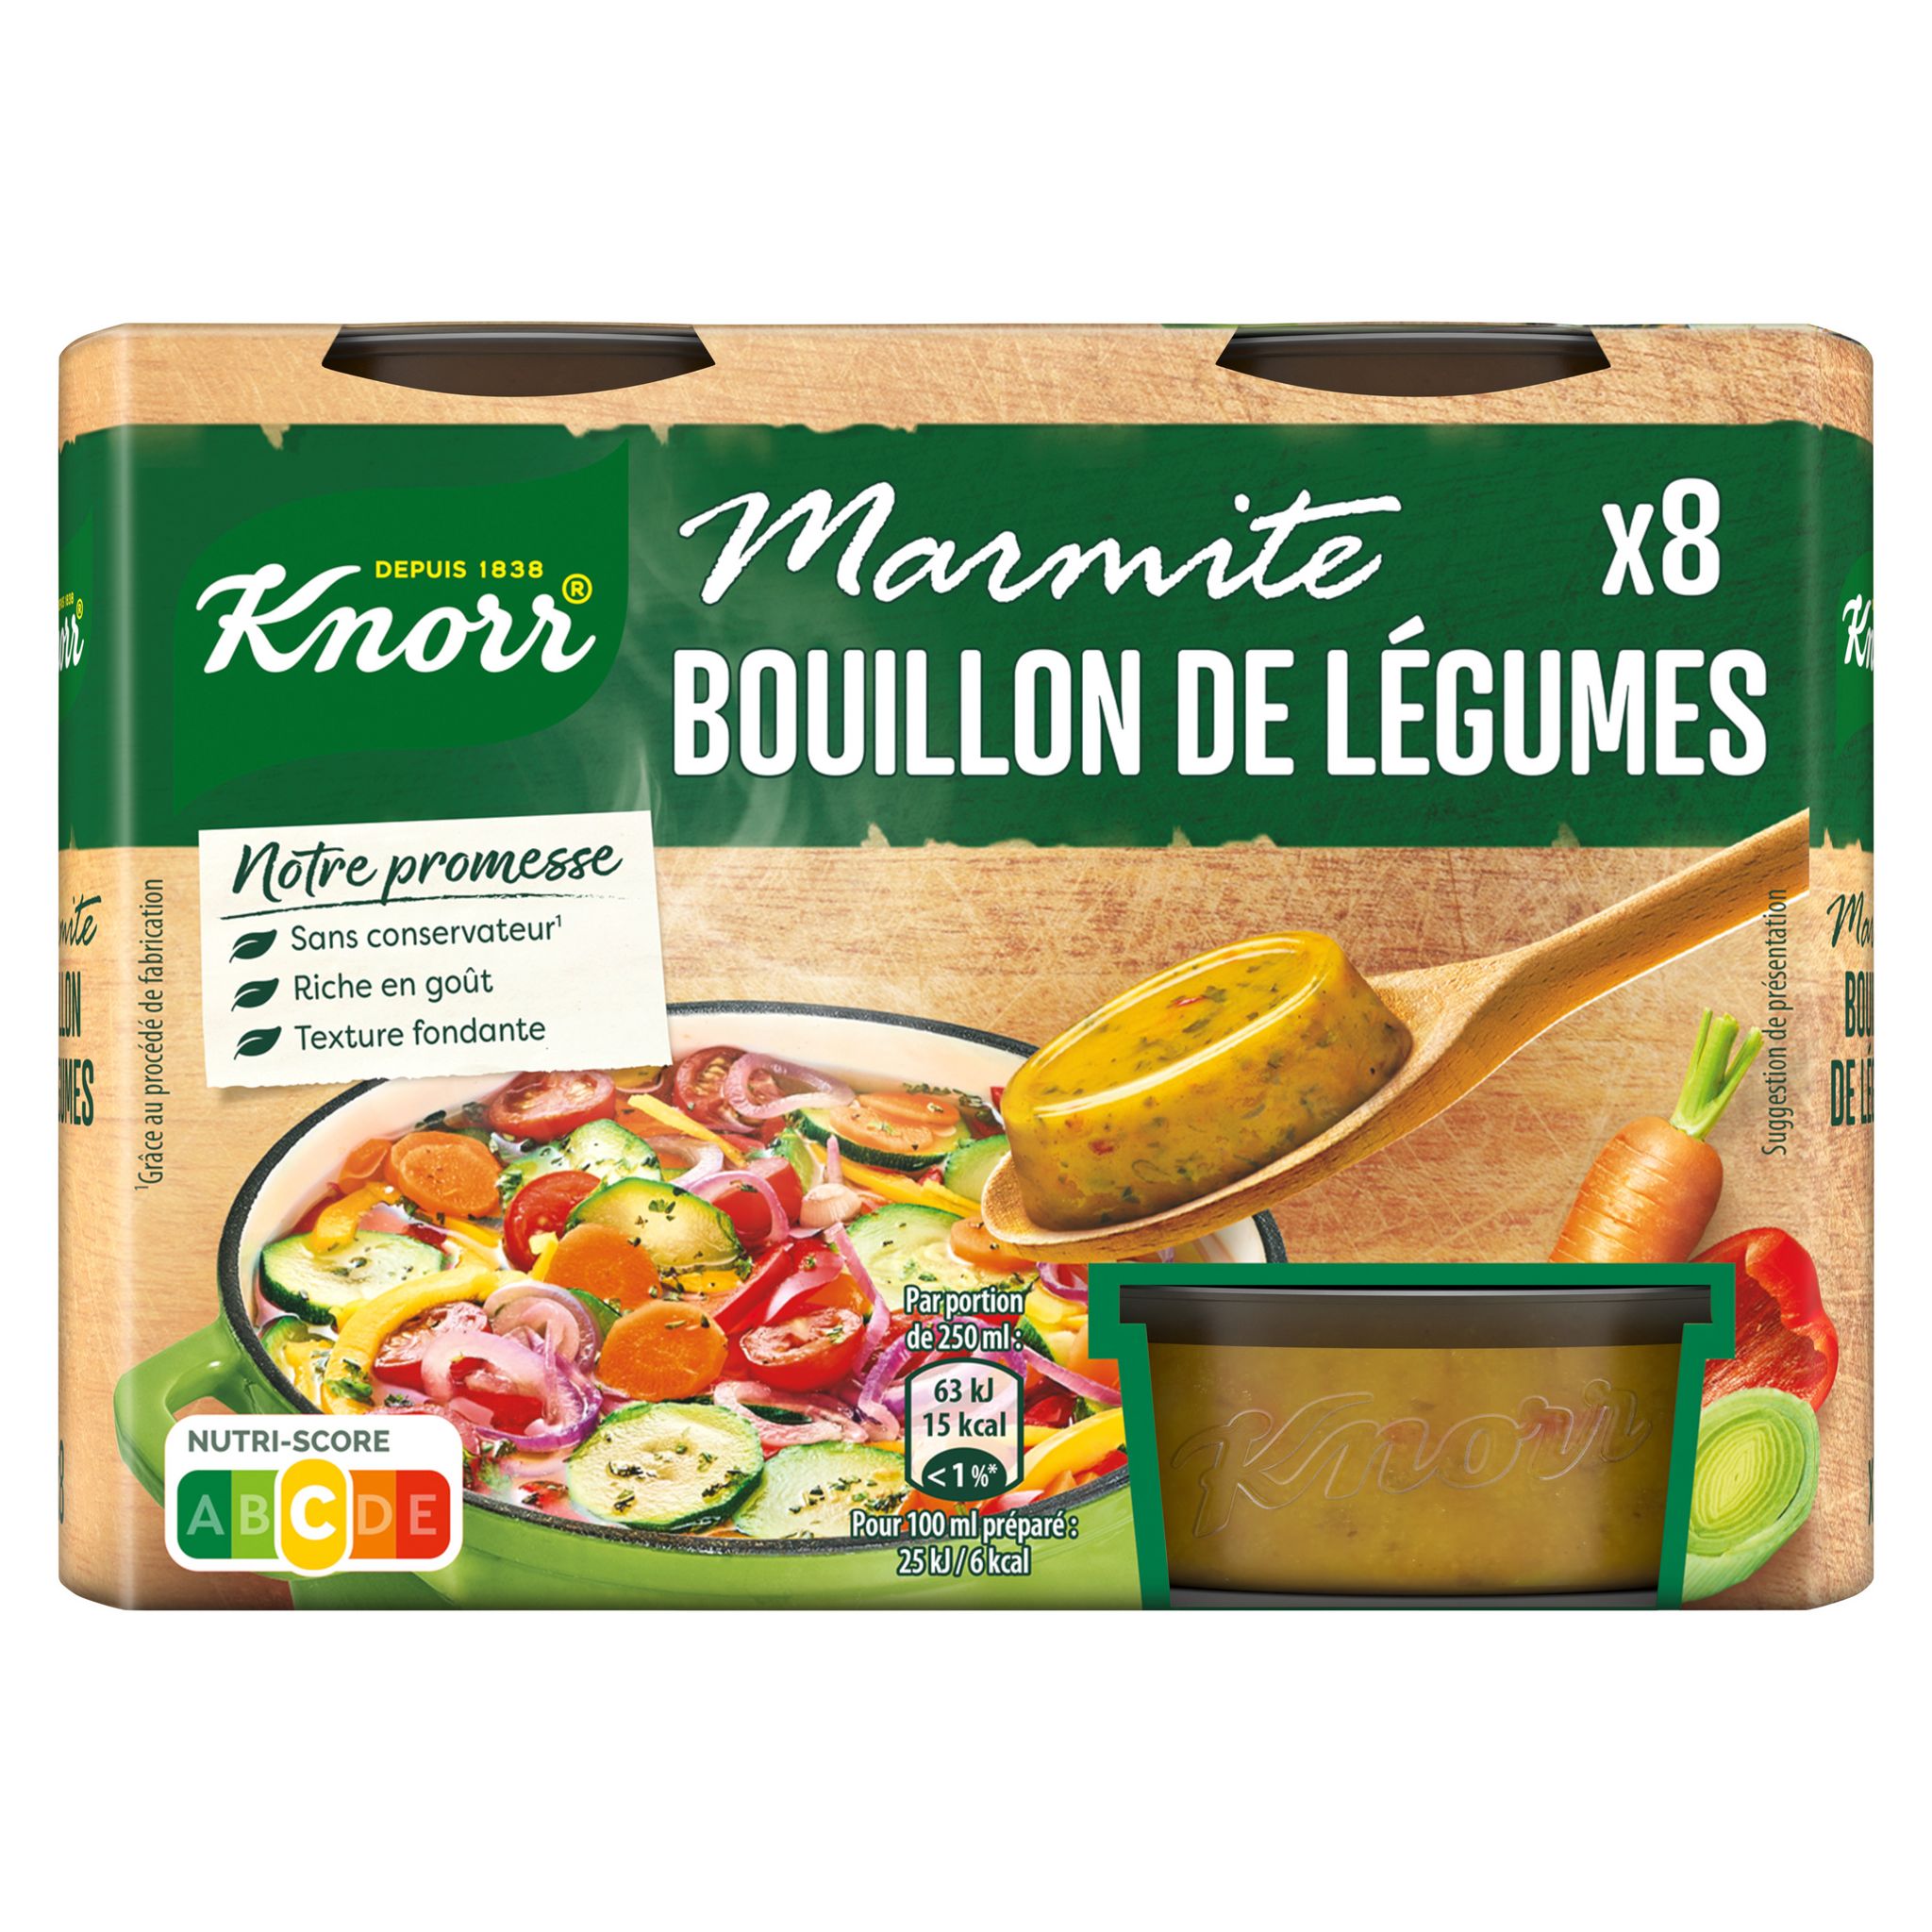 Test Knorr Marmite bouillon de légumes - Bouillon cube - UFC-Que